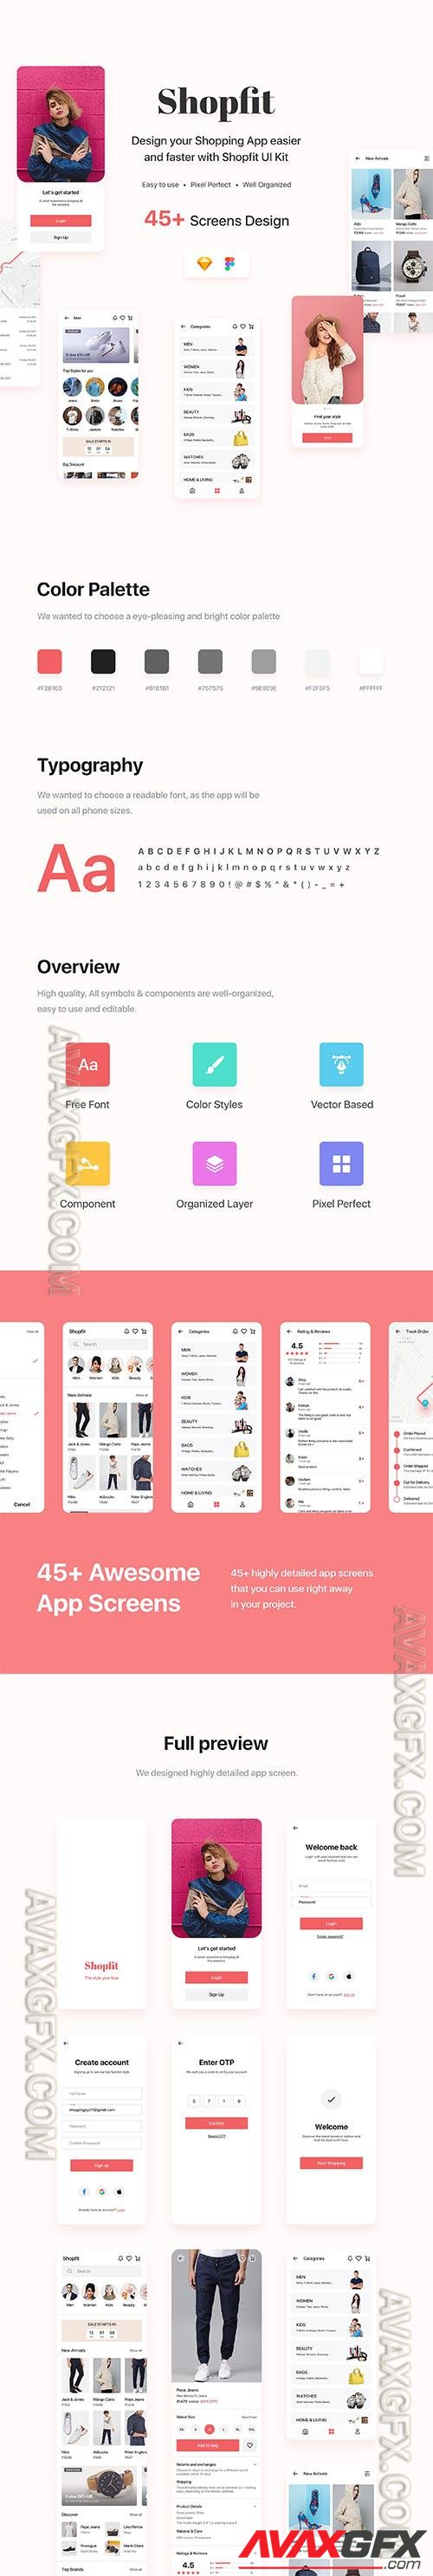 Shopfit - Shopping App UI Kit